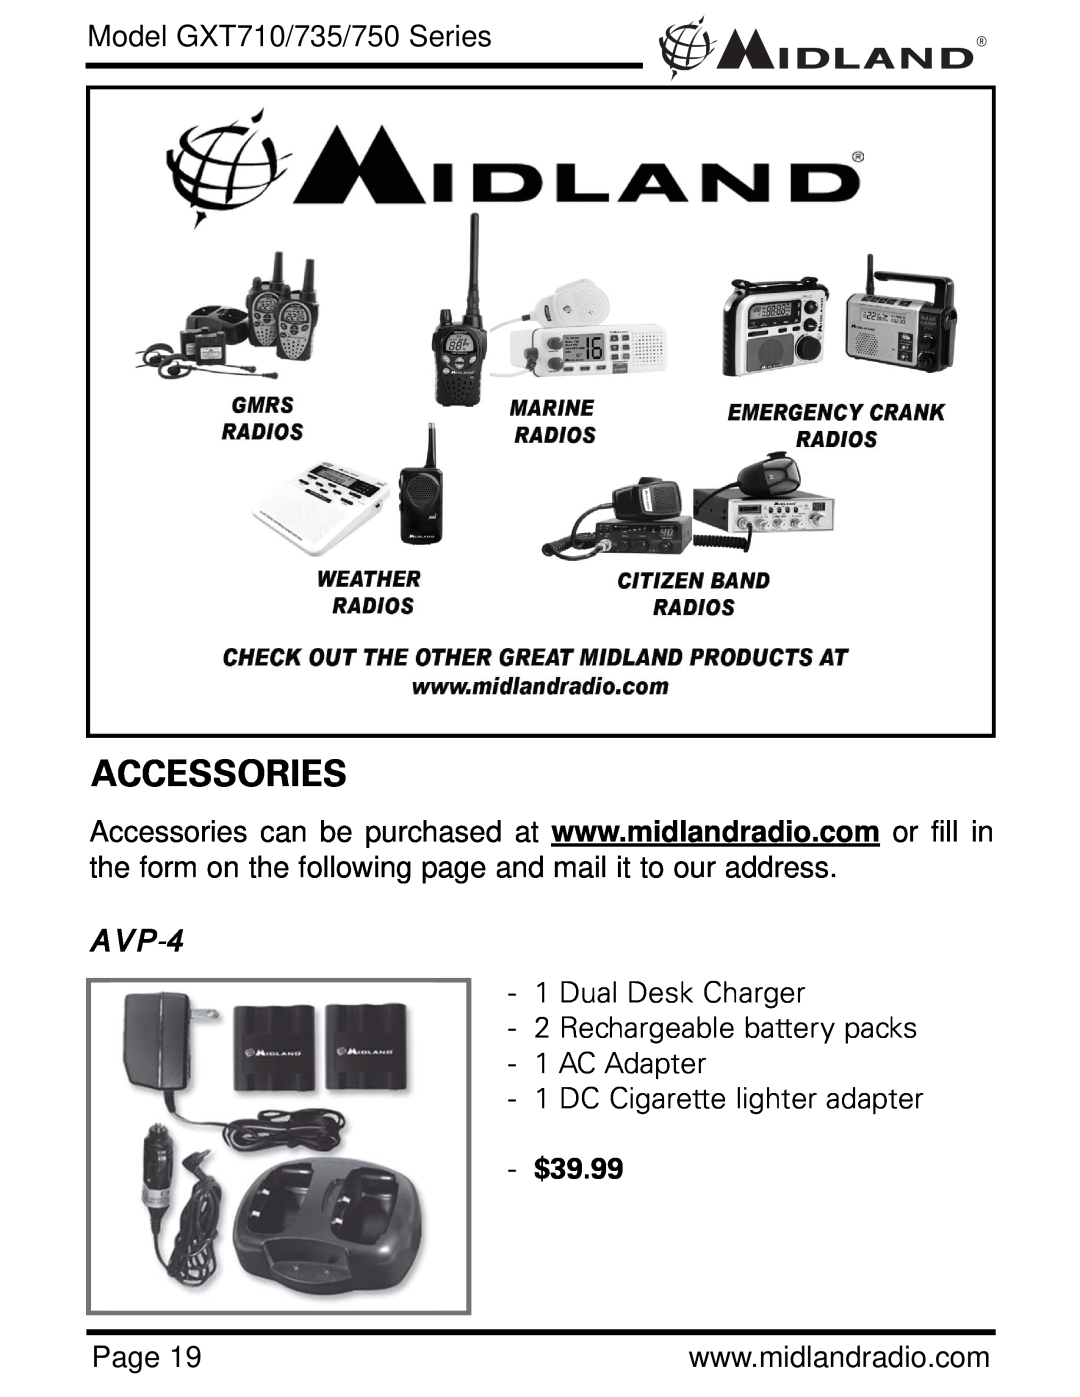 Midland Radio GXT710 Series, GXT735 Series, GXT750 Series Accessories, AVP-4, Model GXT710/735/750 Series, $39.99 